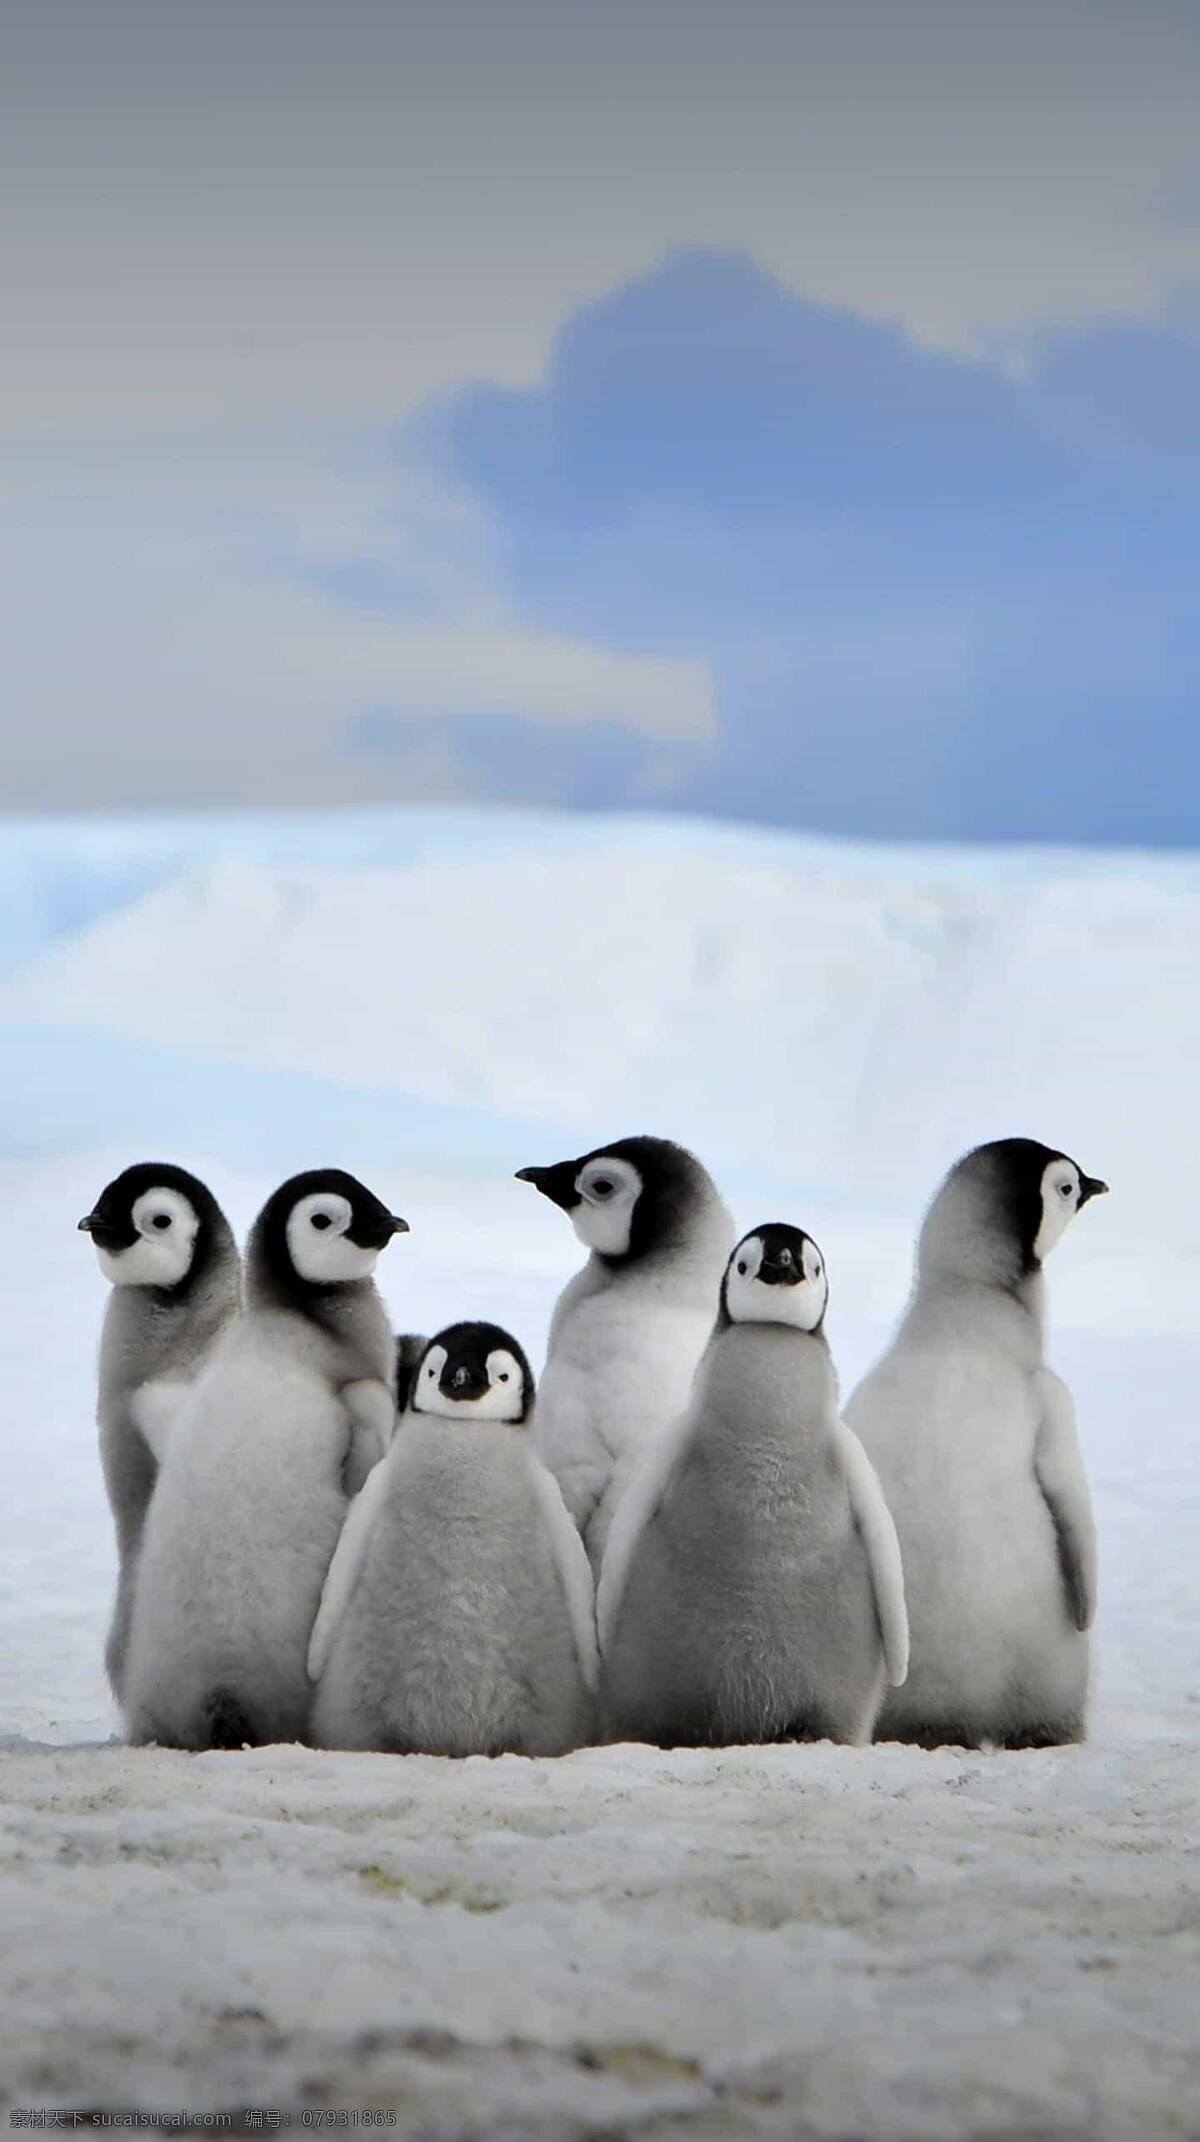 企鹅图片 企鹅 鸟 黑白 南极 动物 白色 憨憨 冬天 寒冷 皮毛 白雪